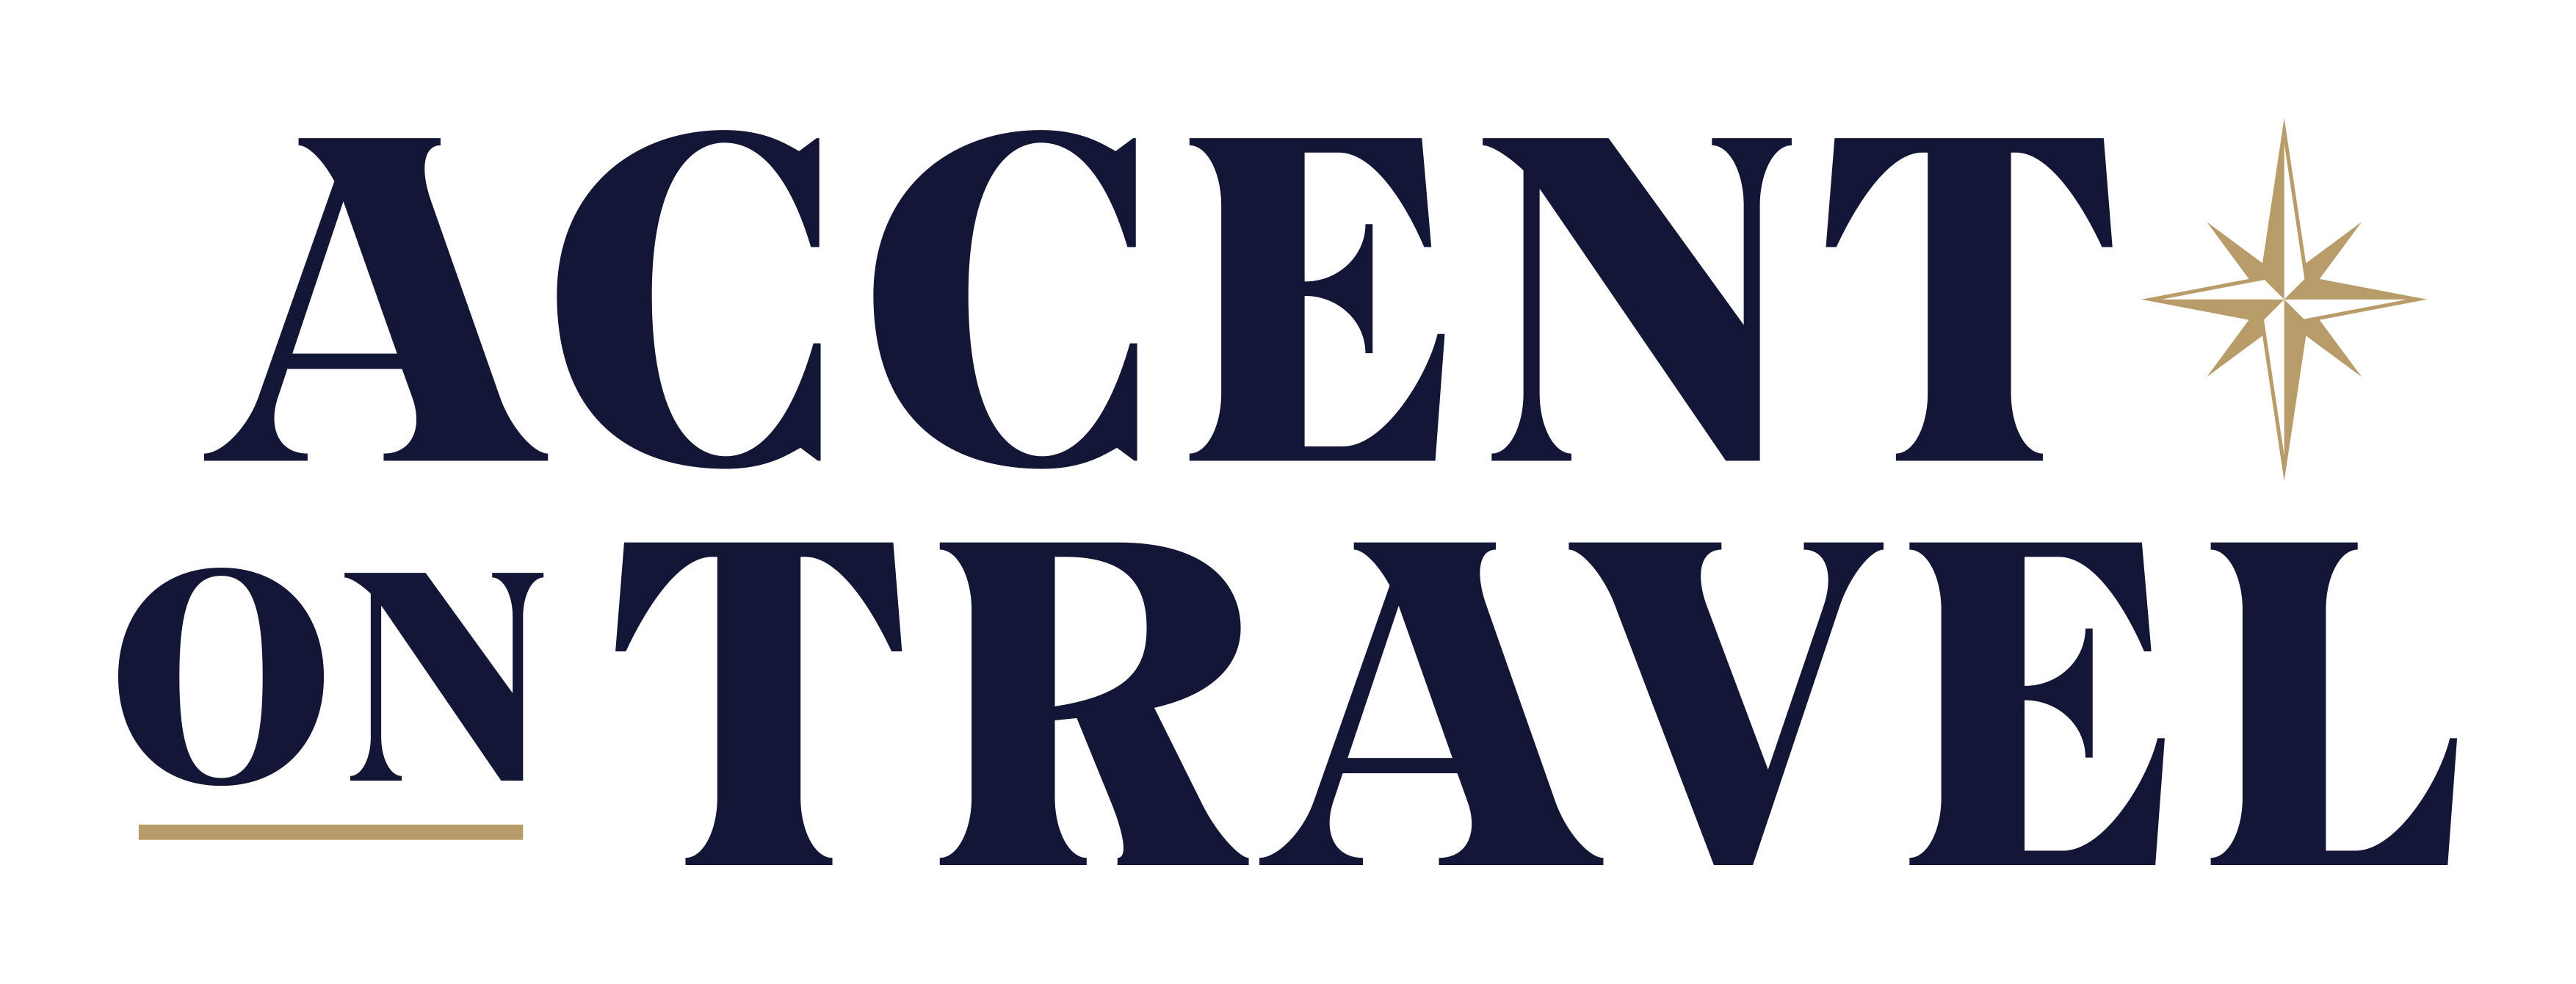 AccentonTravel logo 04